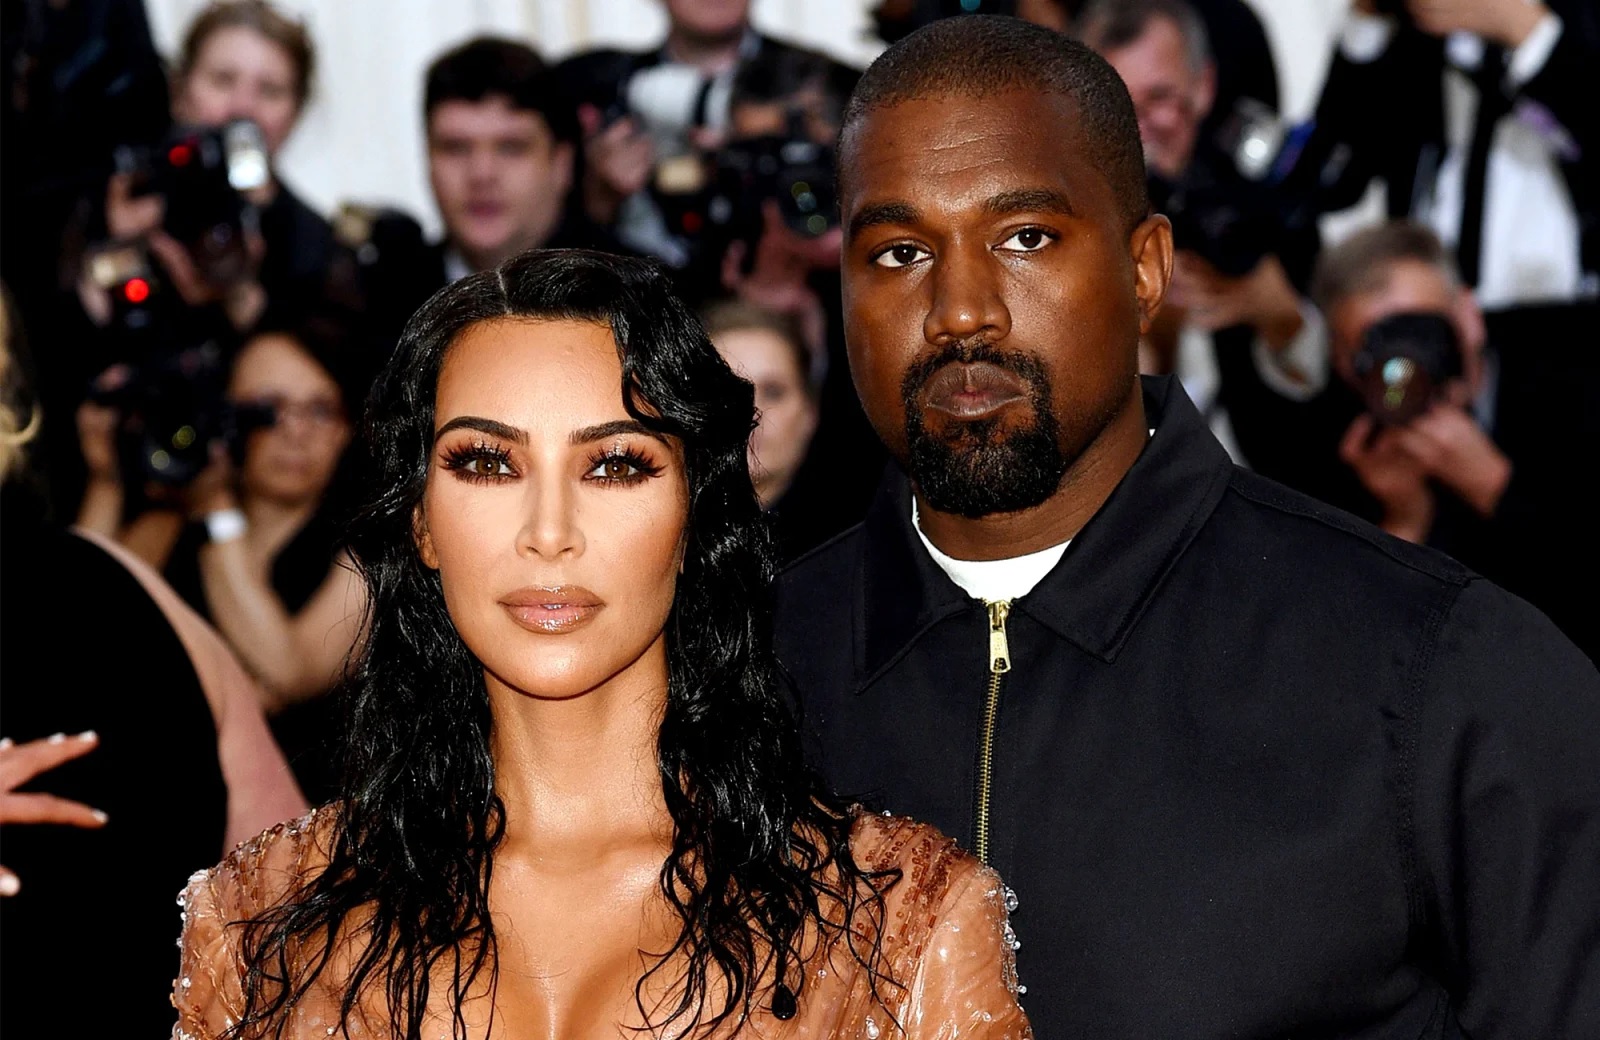 Kim Kardashian and Khloe Kardashian Address Kanye West’s ‘Gravely Irresponsible’ Antisemitic Comments